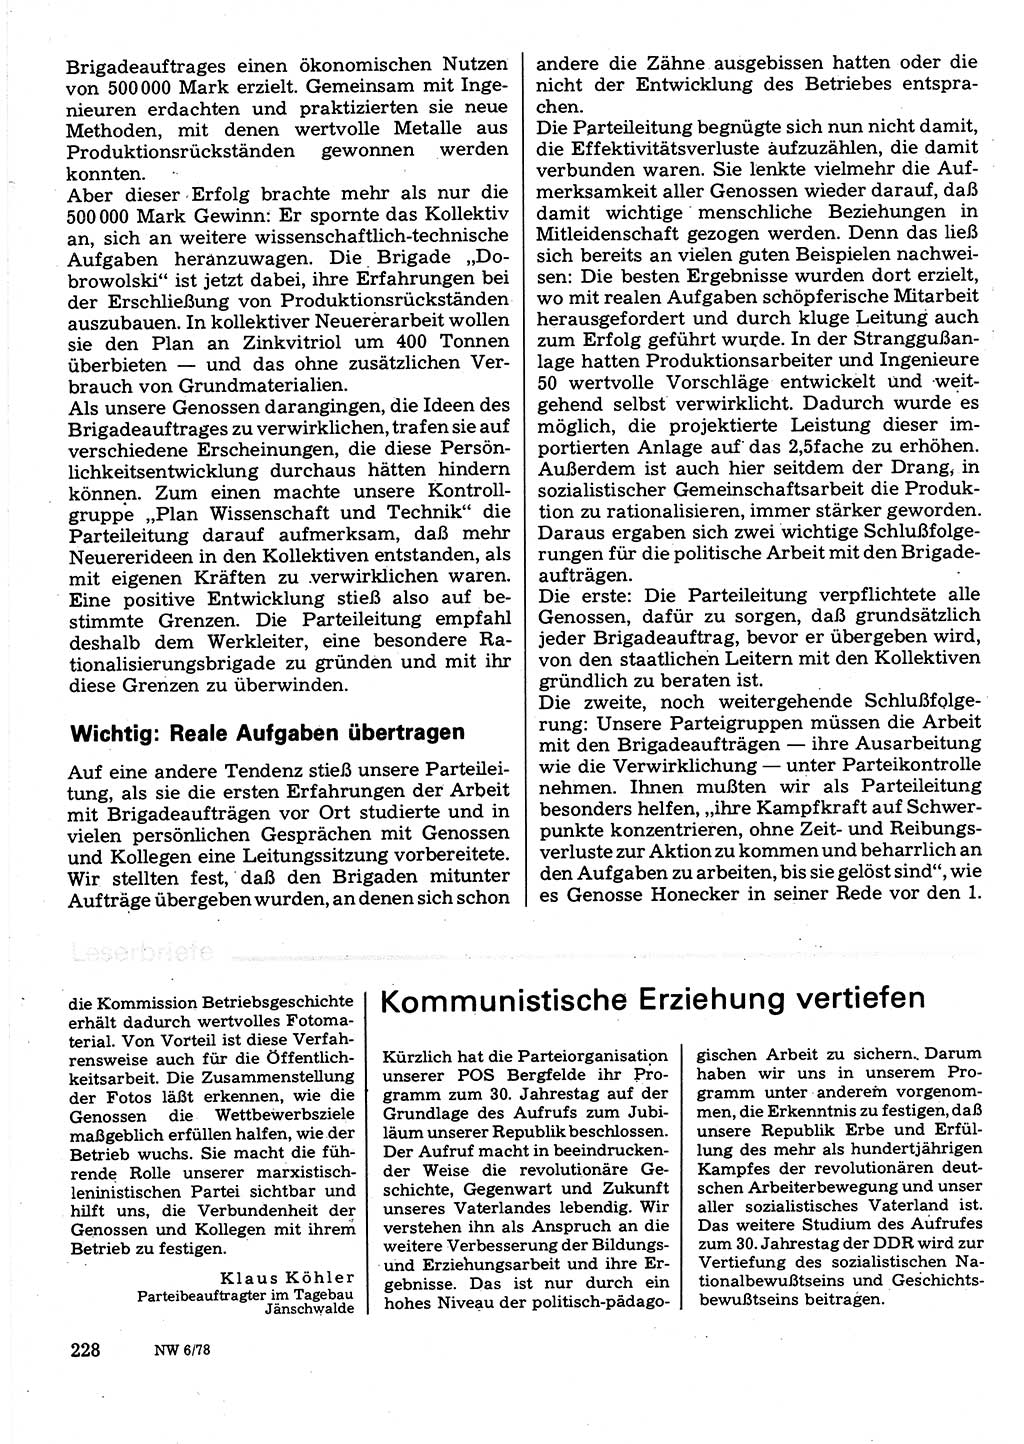 Neuer Weg (NW), Organ des Zentralkomitees (ZK) der SED (Sozialistische Einheitspartei Deutschlands) für Fragen des Parteilebens, 33. Jahrgang [Deutsche Demokratische Republik (DDR)] 1978, Seite 228 (NW ZK SED DDR 1978, S. 228)